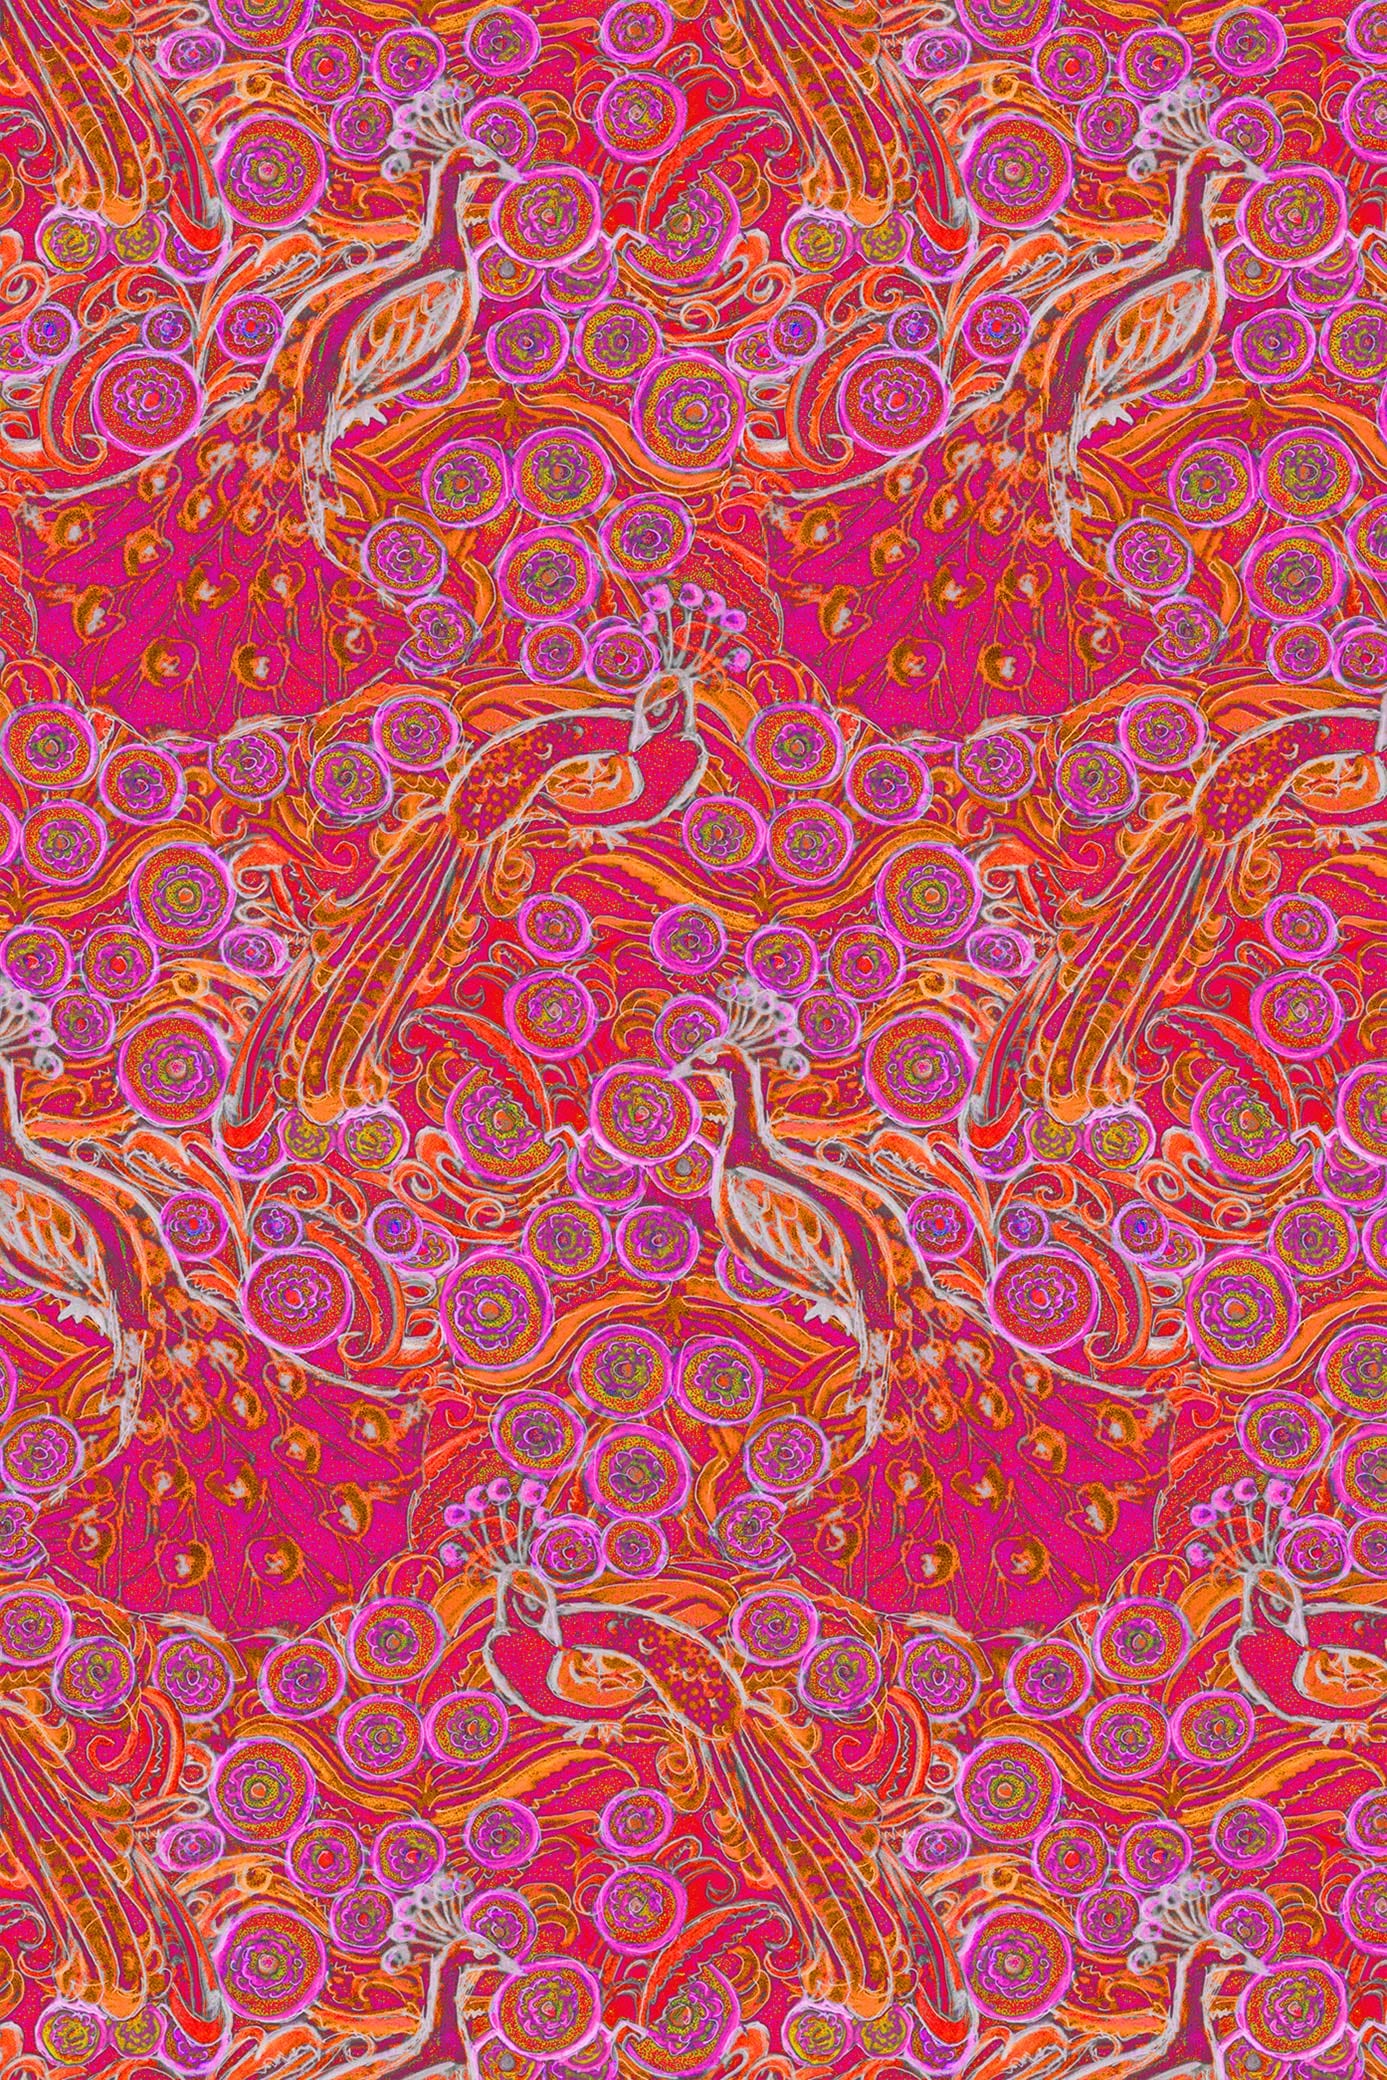 W.E.T. by Ines Schneider Top Top Nora 22/ Pavone mode hamburg print sommerkleid Unique Prints Summer Dress Handdesignierte Prints Print